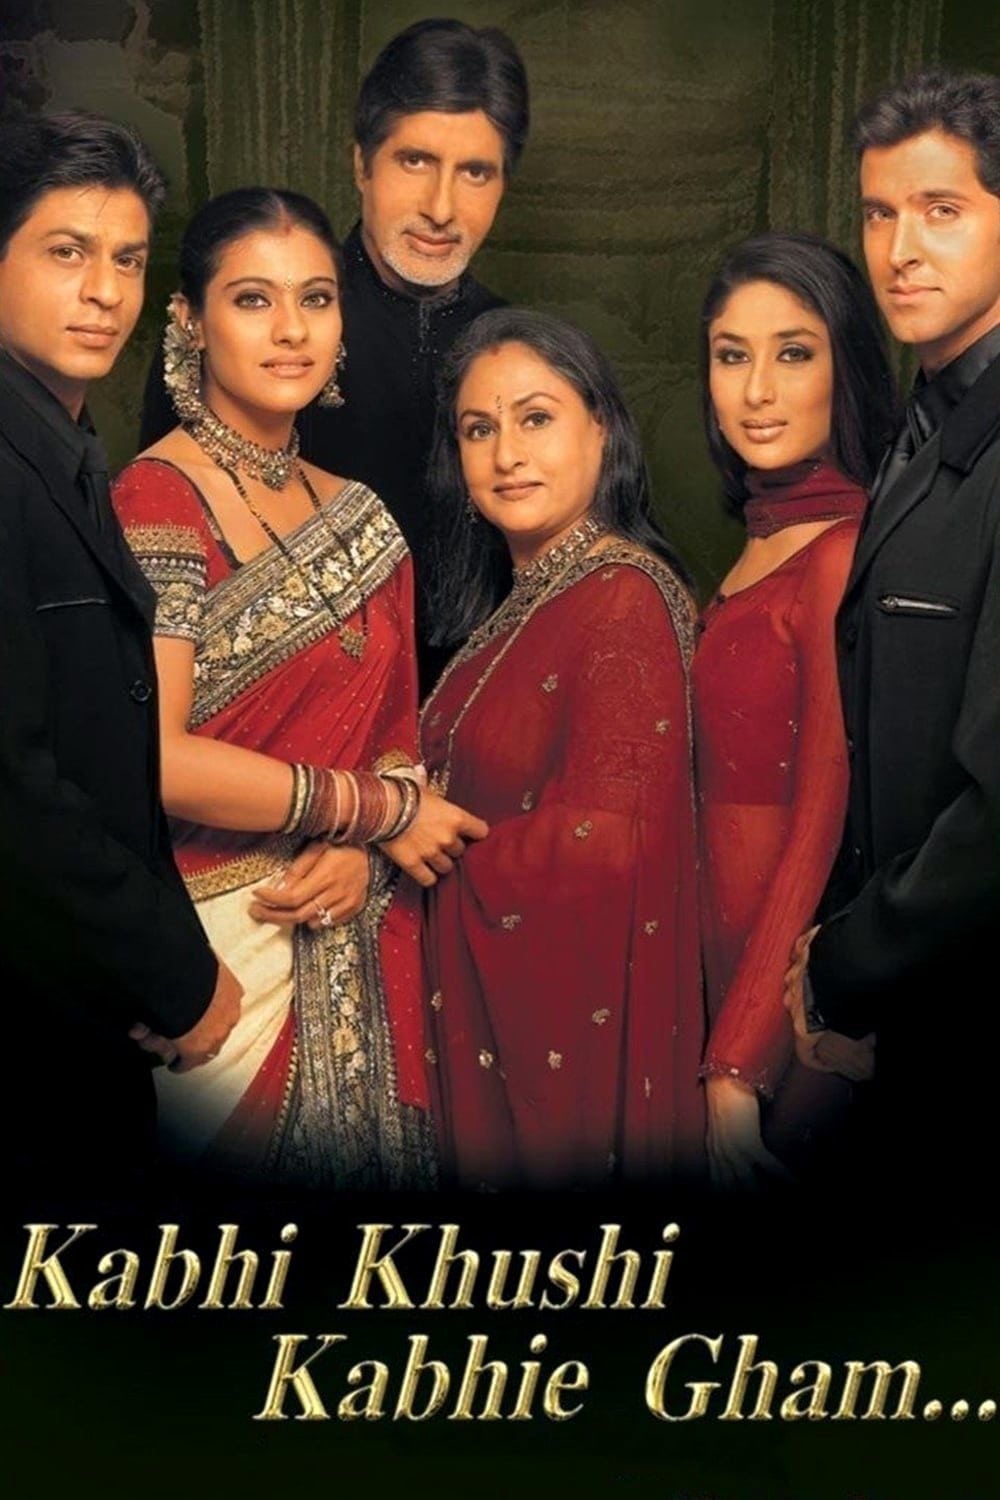 ดูหนังออนไลน์ Kabhi Khushi Kabhie Gham (2001) ฟ้ามิอาจกั้นรัก [ซับไทย]